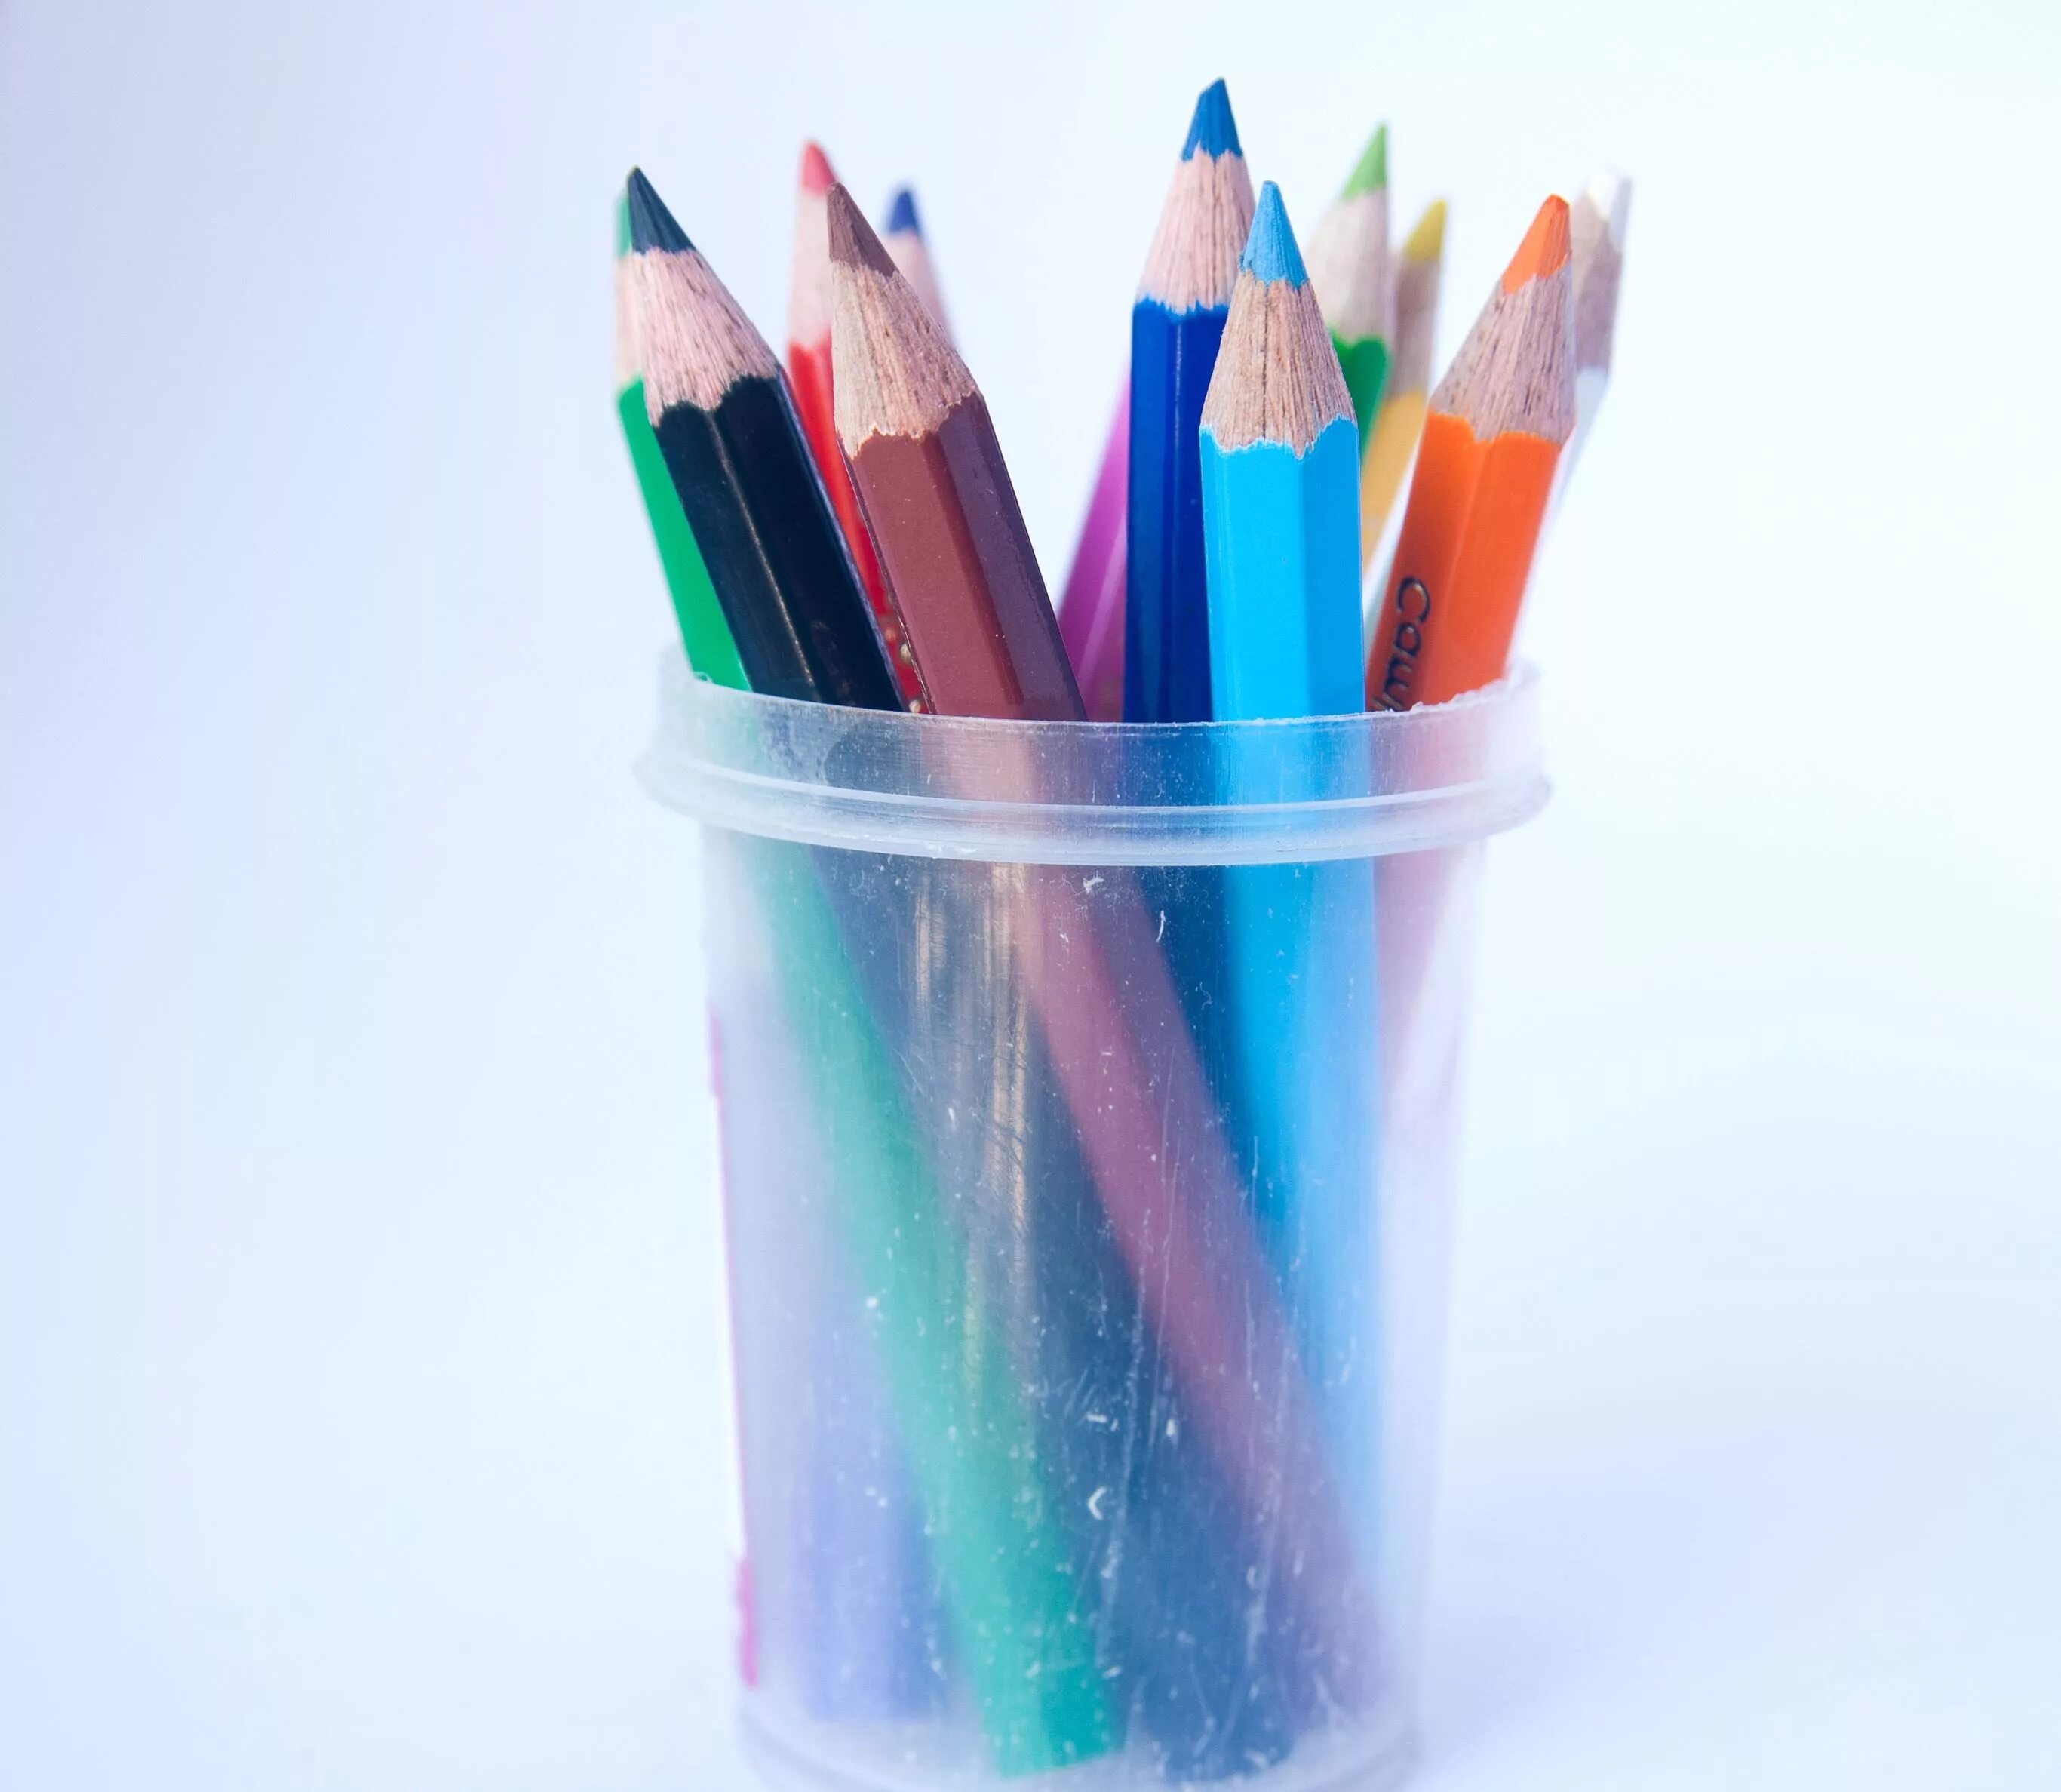 Цветные карандаши в стакане. Карандаши в карандашнице. Стопка карандашей. Карандаши цвета радуги.